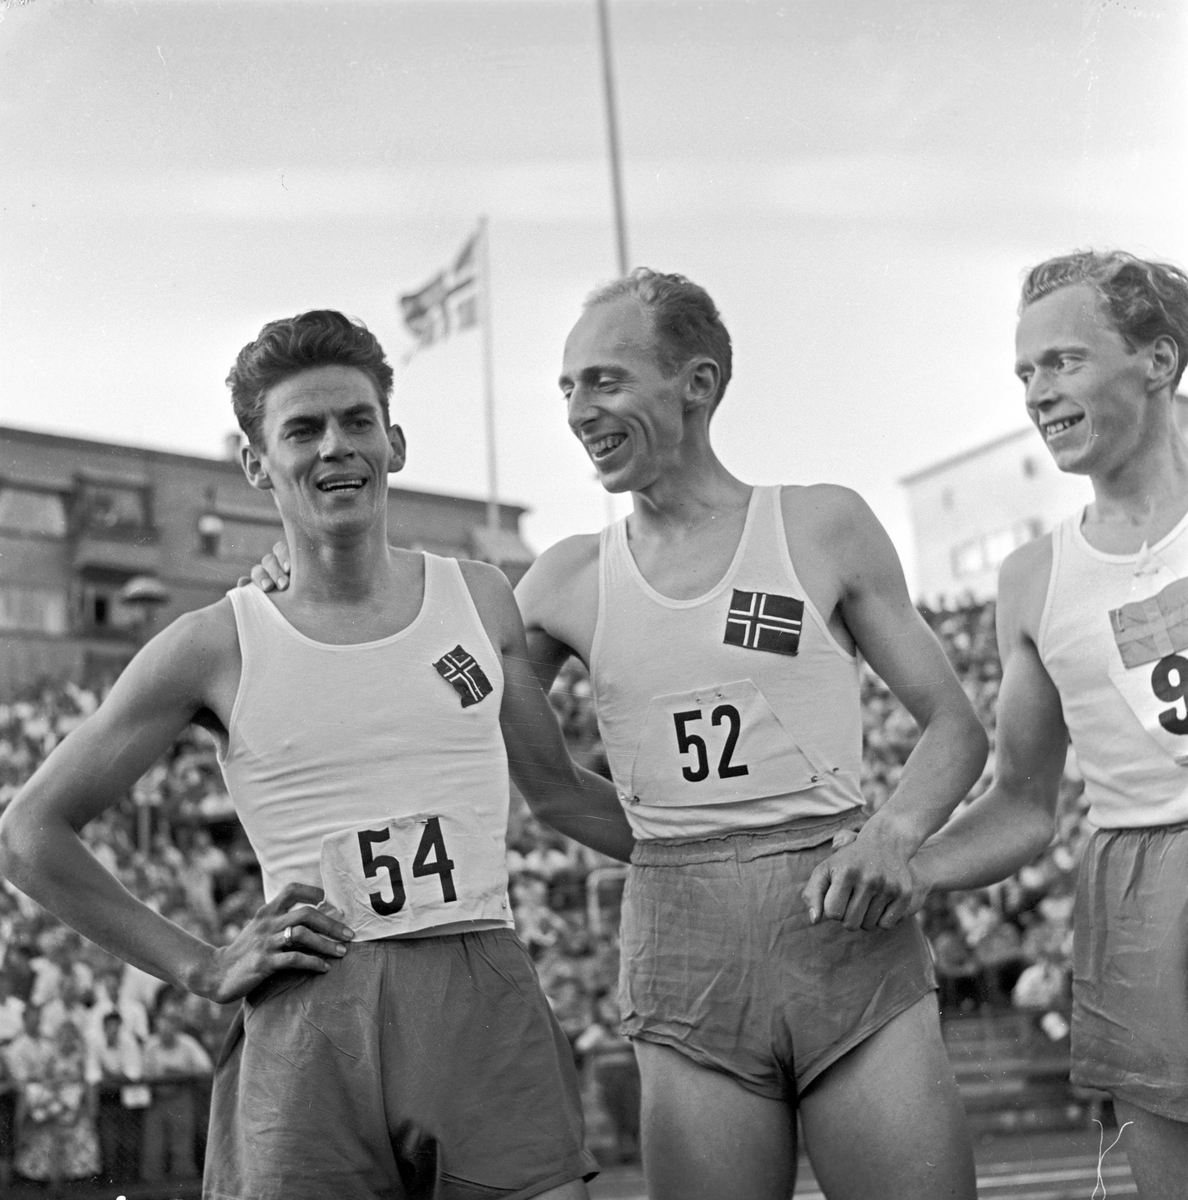 Serie. Landskamp i friidrett mellom Norge og Sverige på Bislett, Oslo. Fotografert 1956.